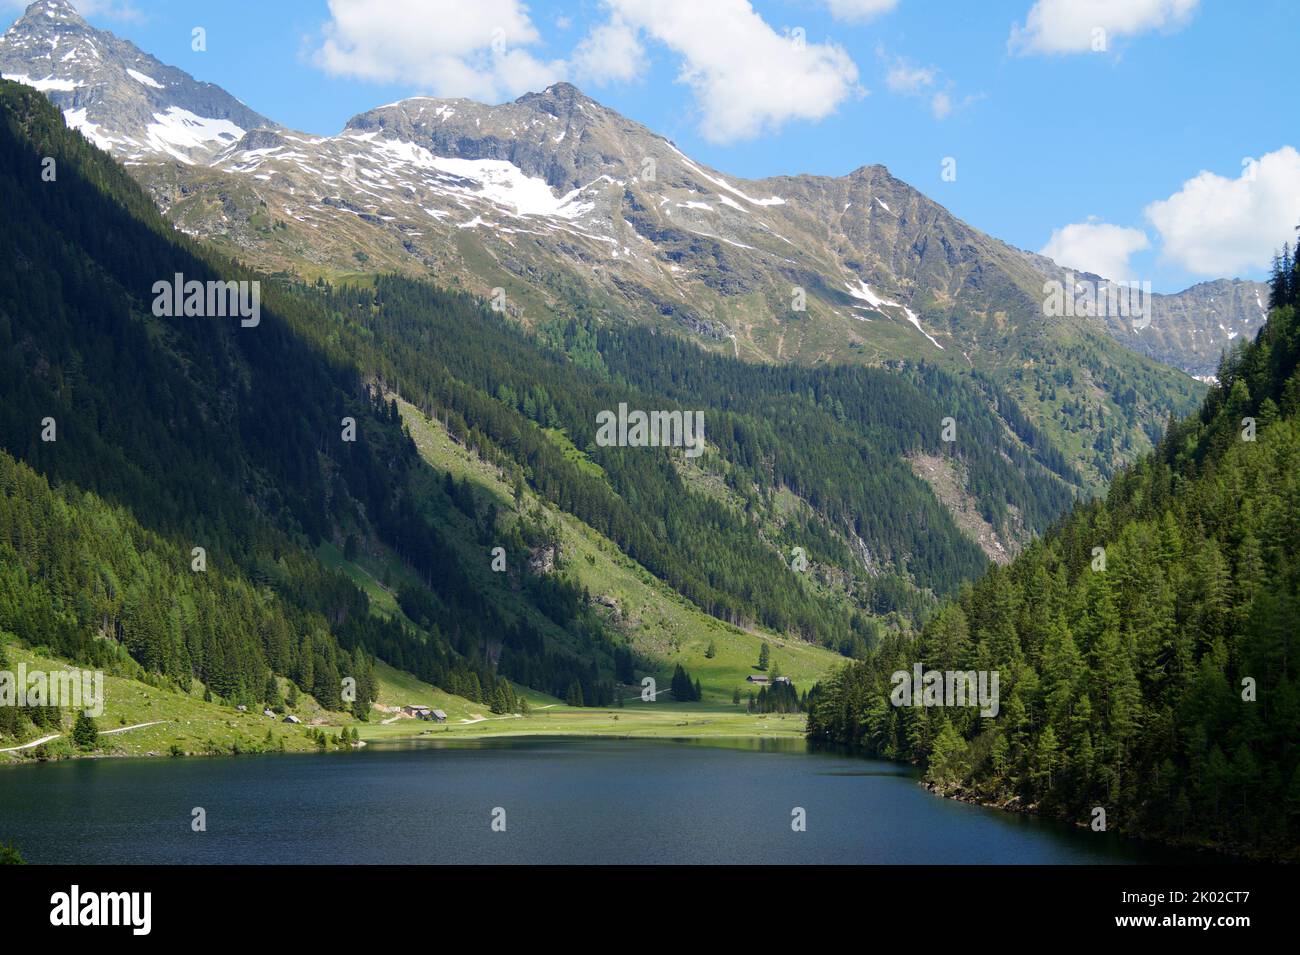 Paesaggio alpino verdeggiante e paesaggistico con un lago e abeti e Alpi innevate della regione di Schladming-Dachstein in Austria (Steiermark o Stiria) Foto Stock